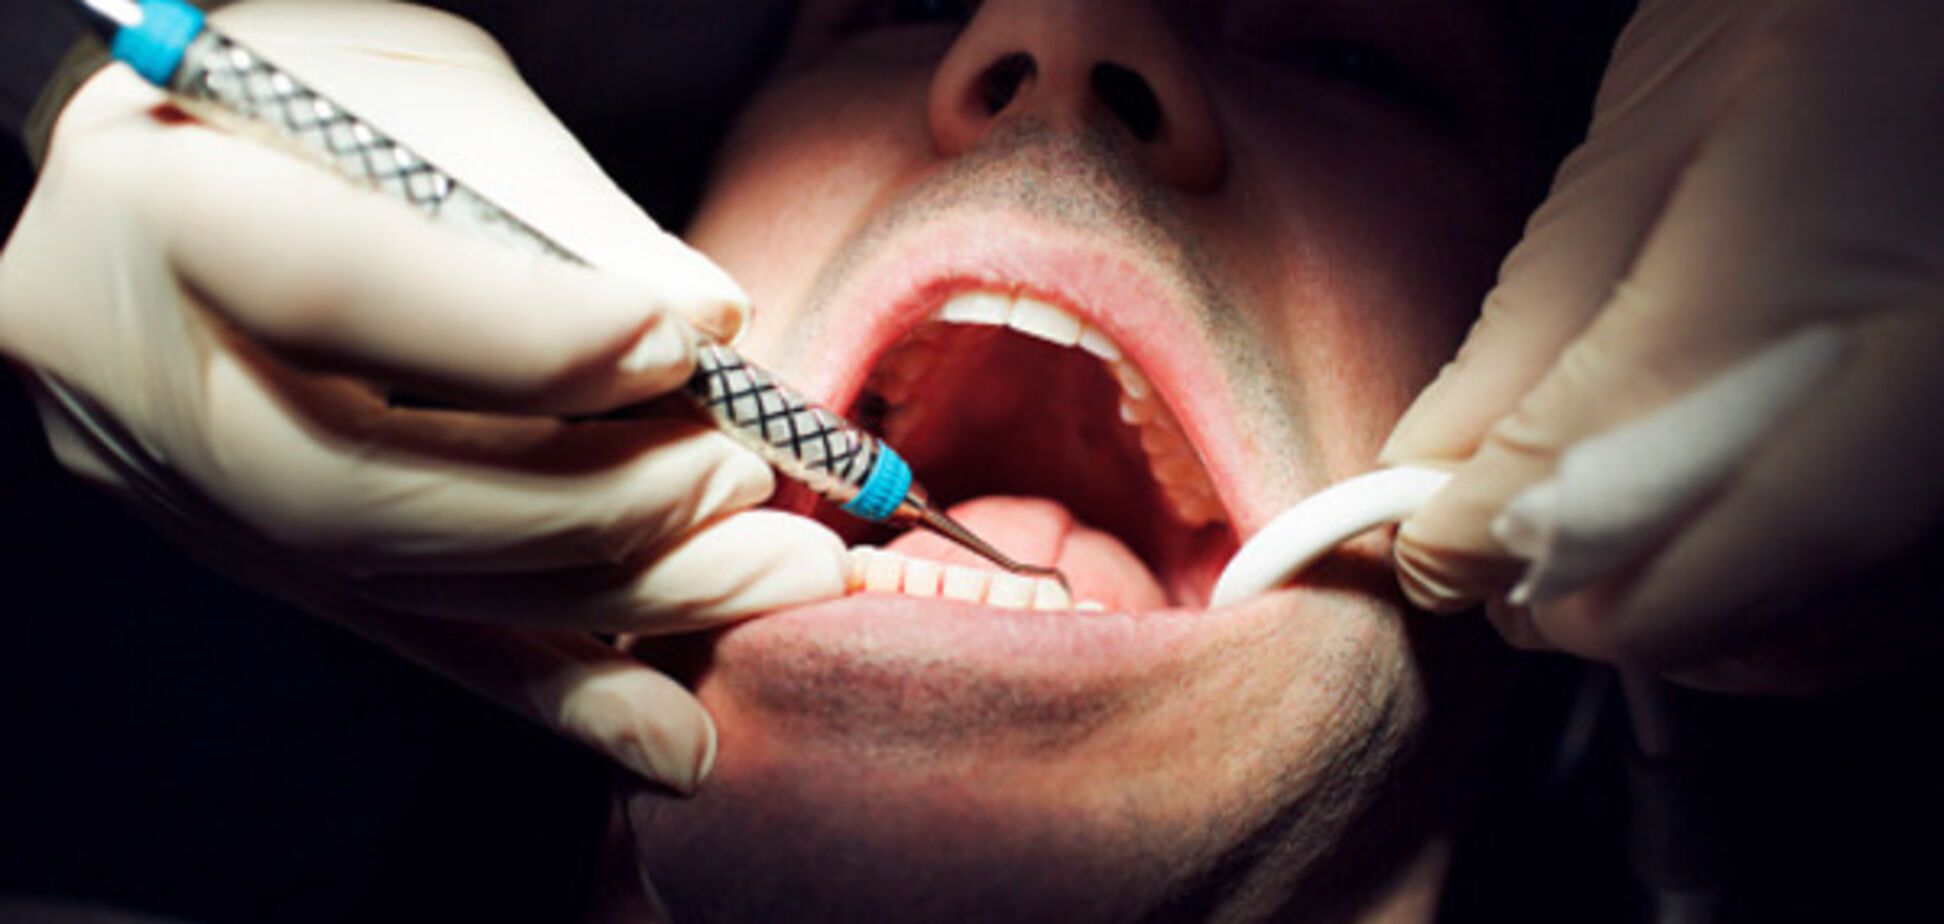 Срок за зуб: под Киевом стоматолога могут посадить за увечья пациенту